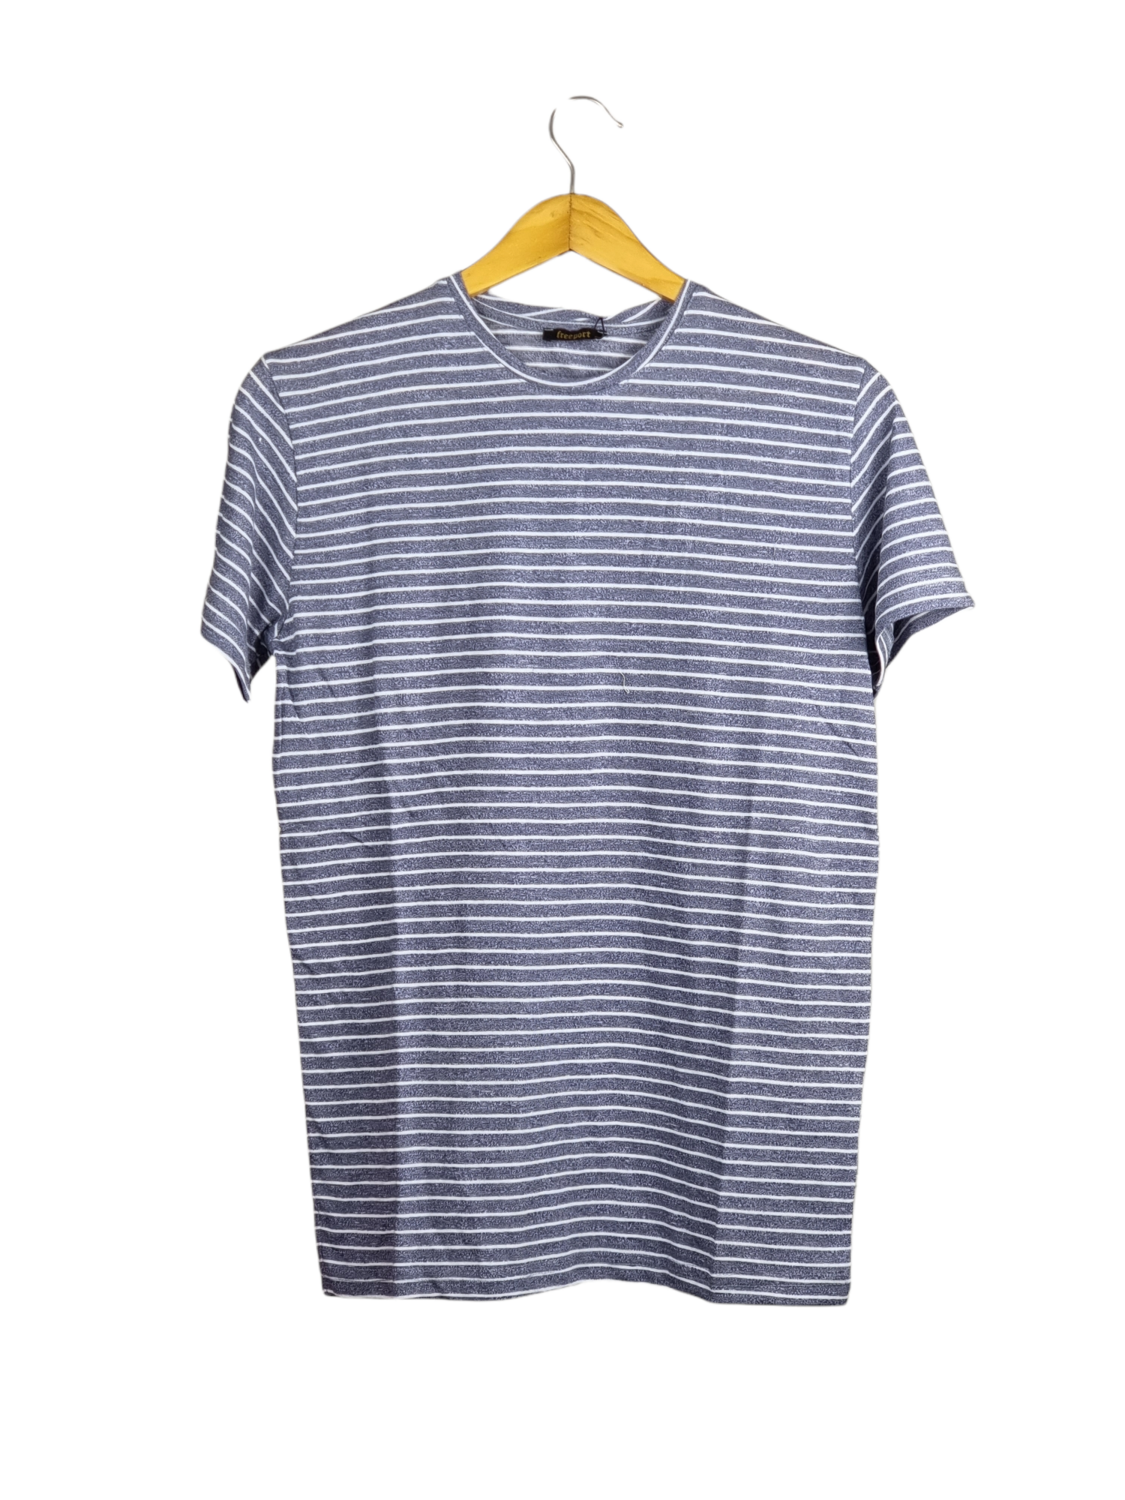 Striped Tshirt - Bright Blue